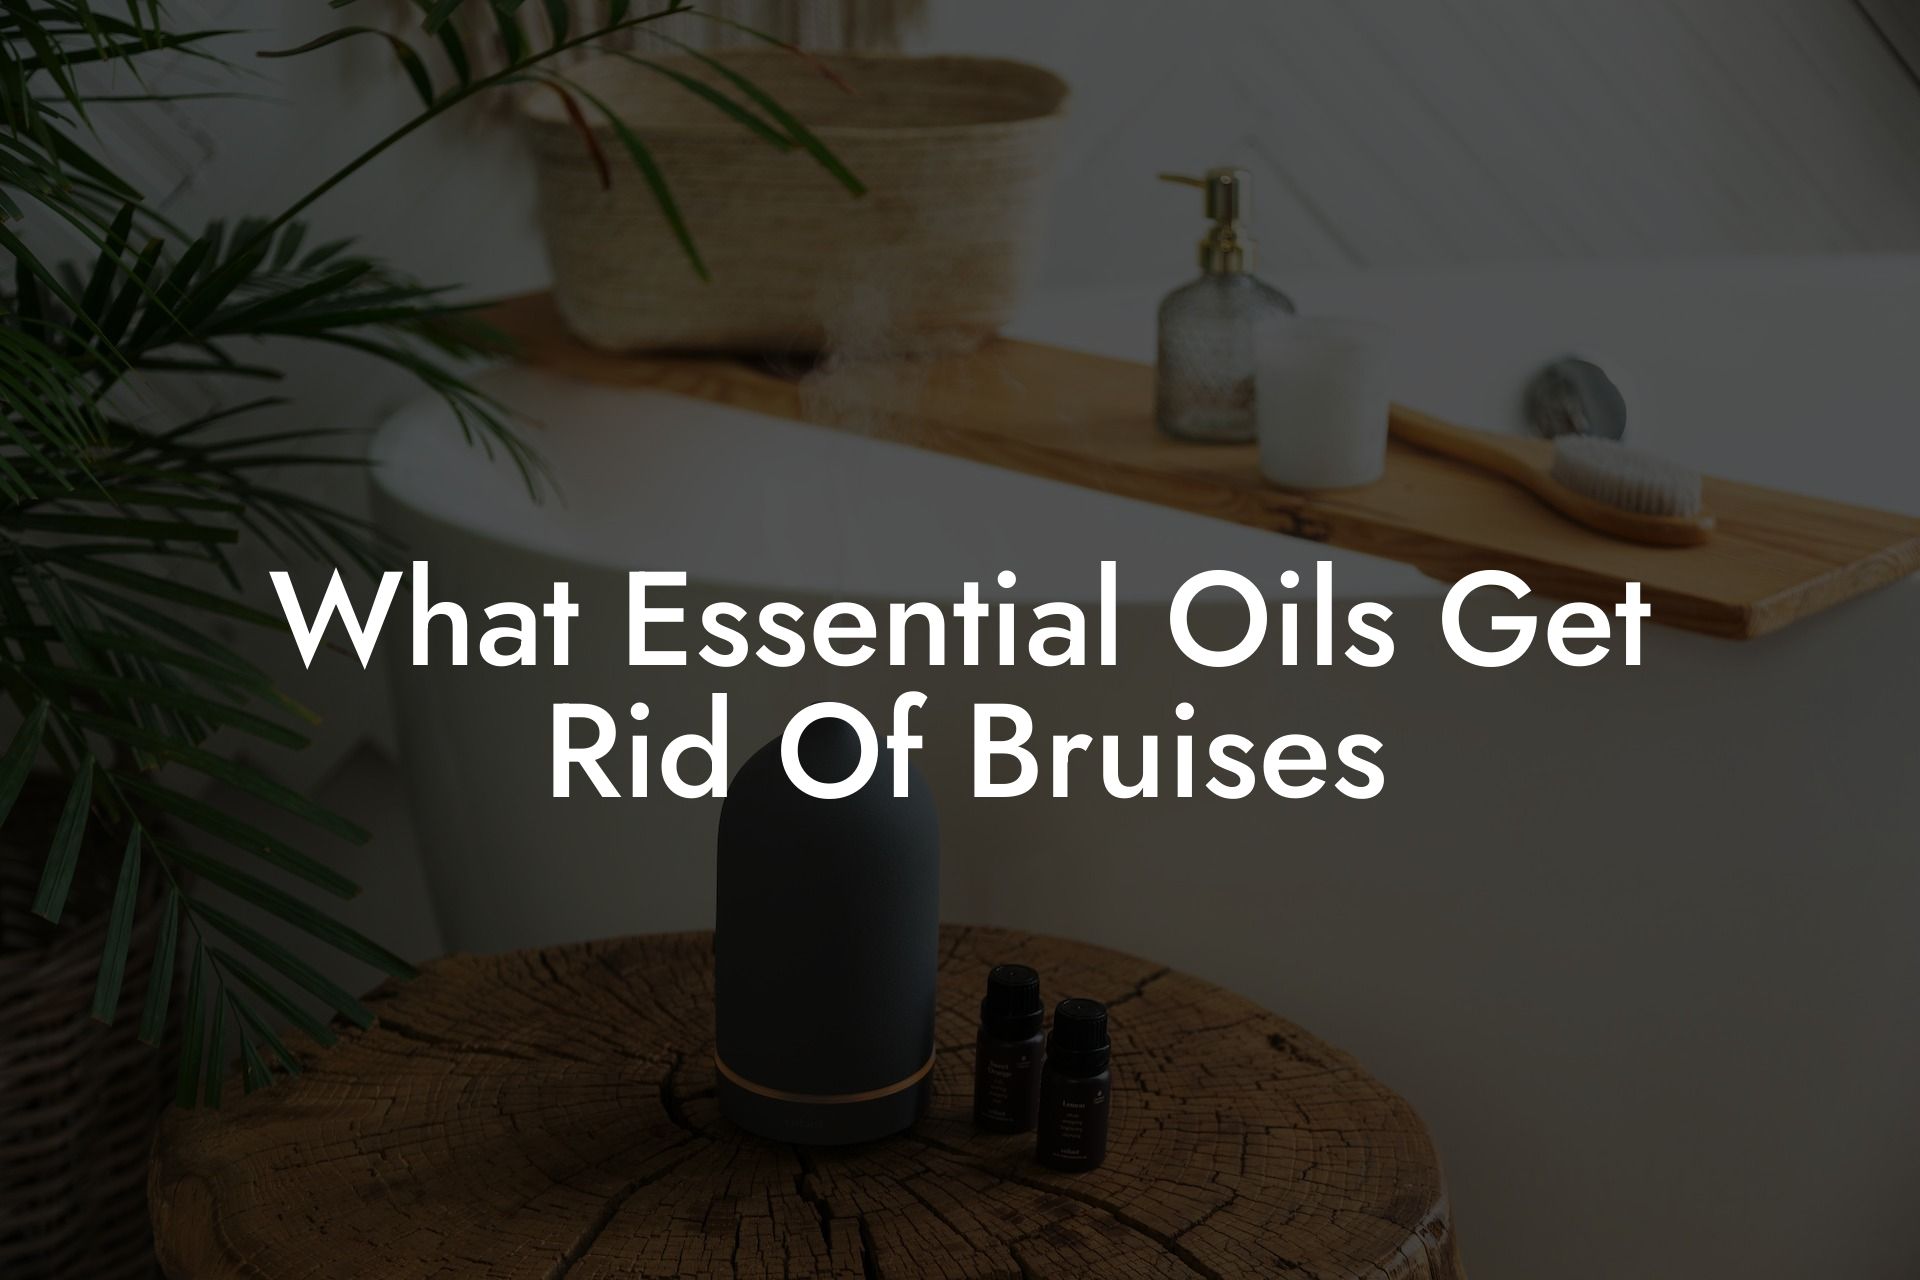 What Essential Oils Get Rid Of Bruises